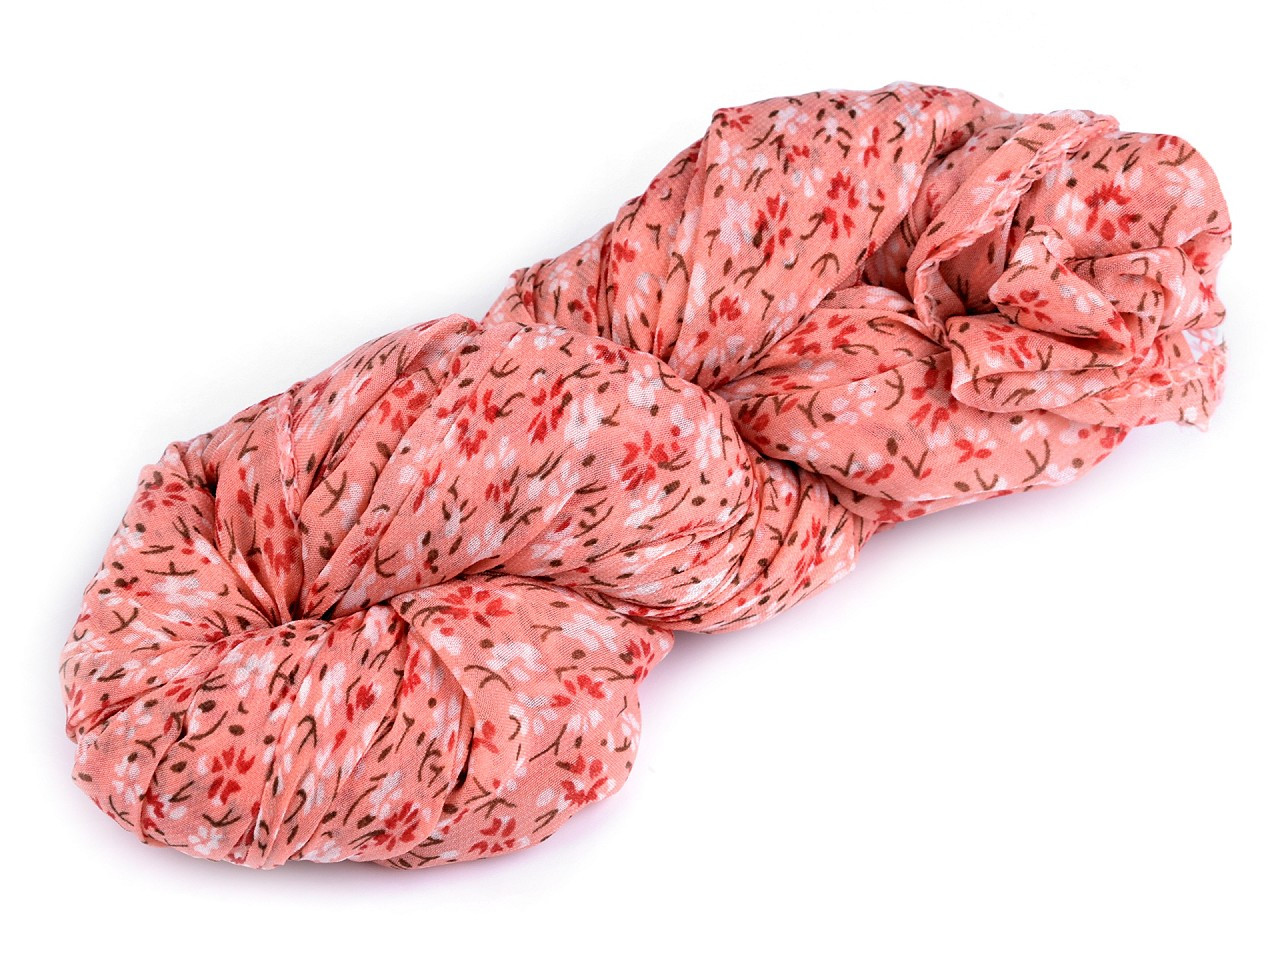 Letní šátek / šála květy 80x160 cm, barva 3 korálová světlá